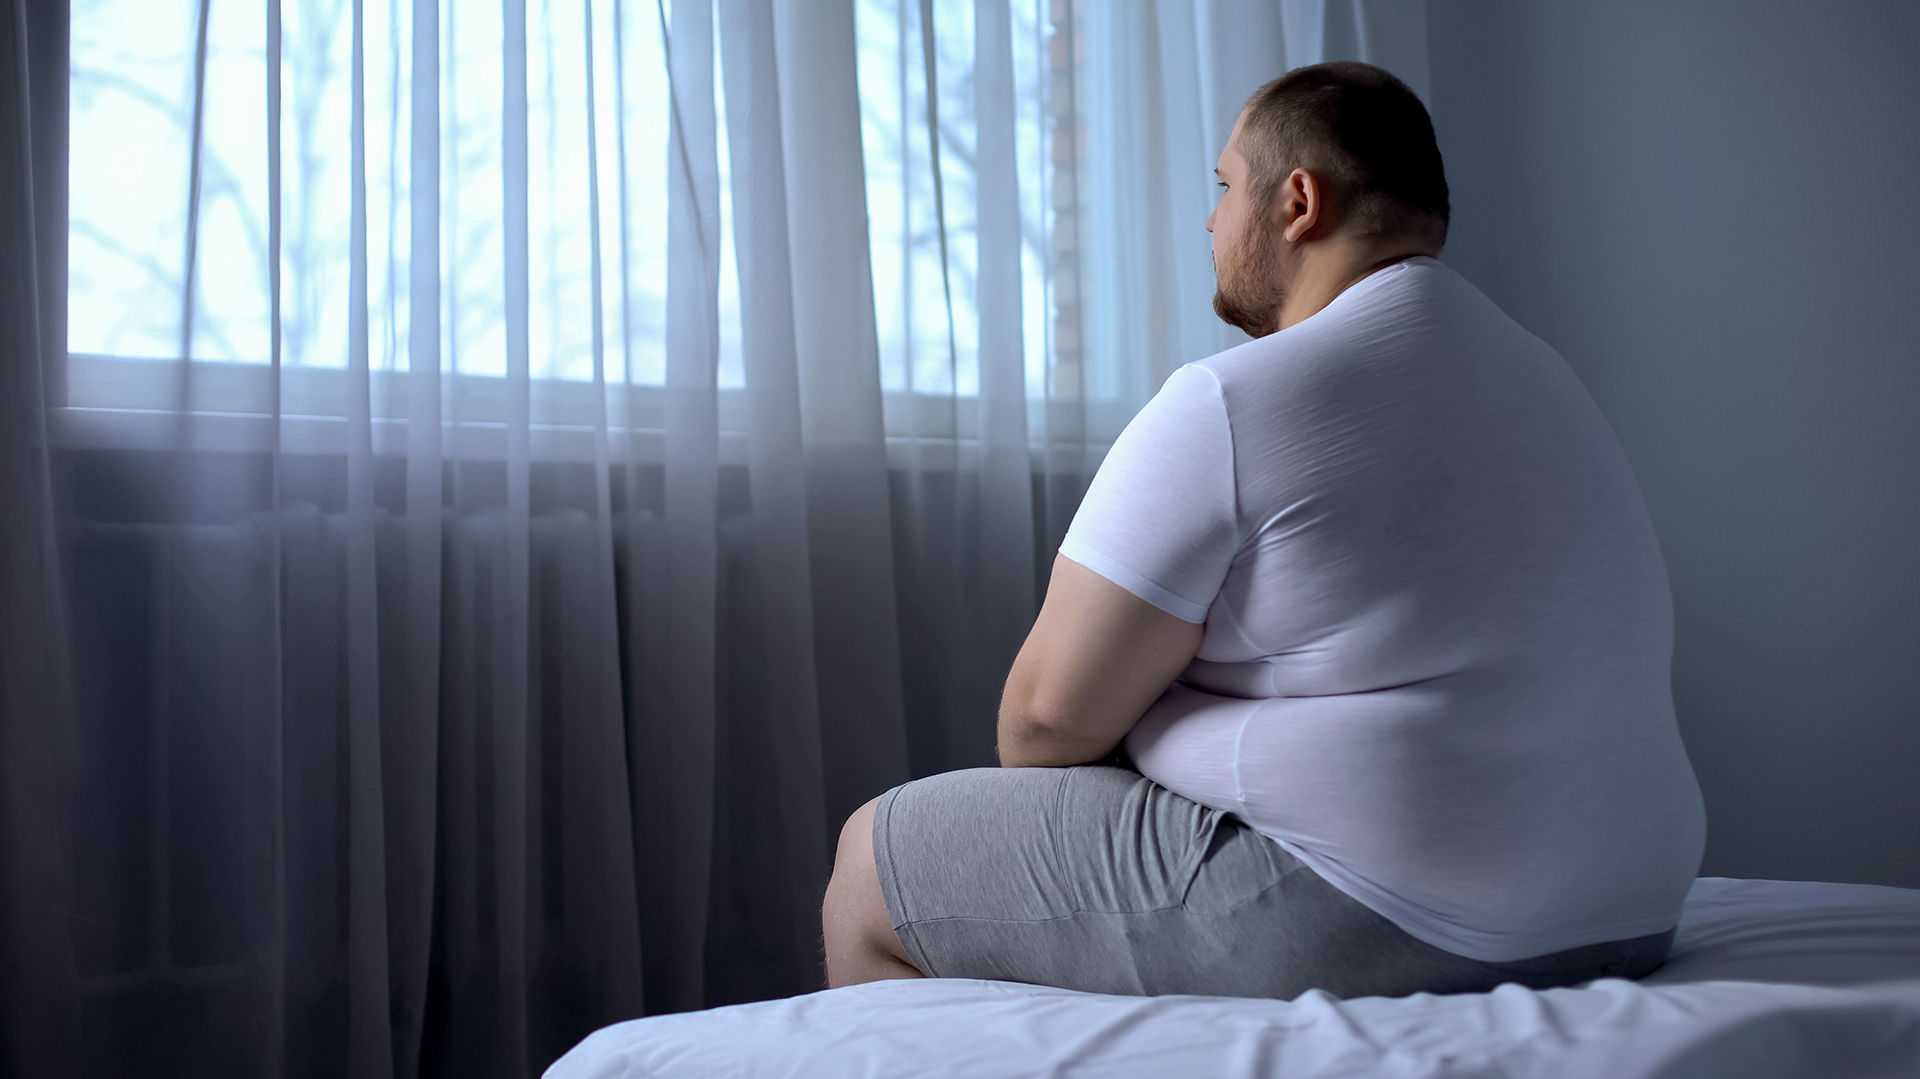 Las personas con obesidad tienen un mayor riesgo de contraer el coronavirus en todos los sentidos y su riesgo de terminar en el hospital aumenta en un 113% (Shutterstock)